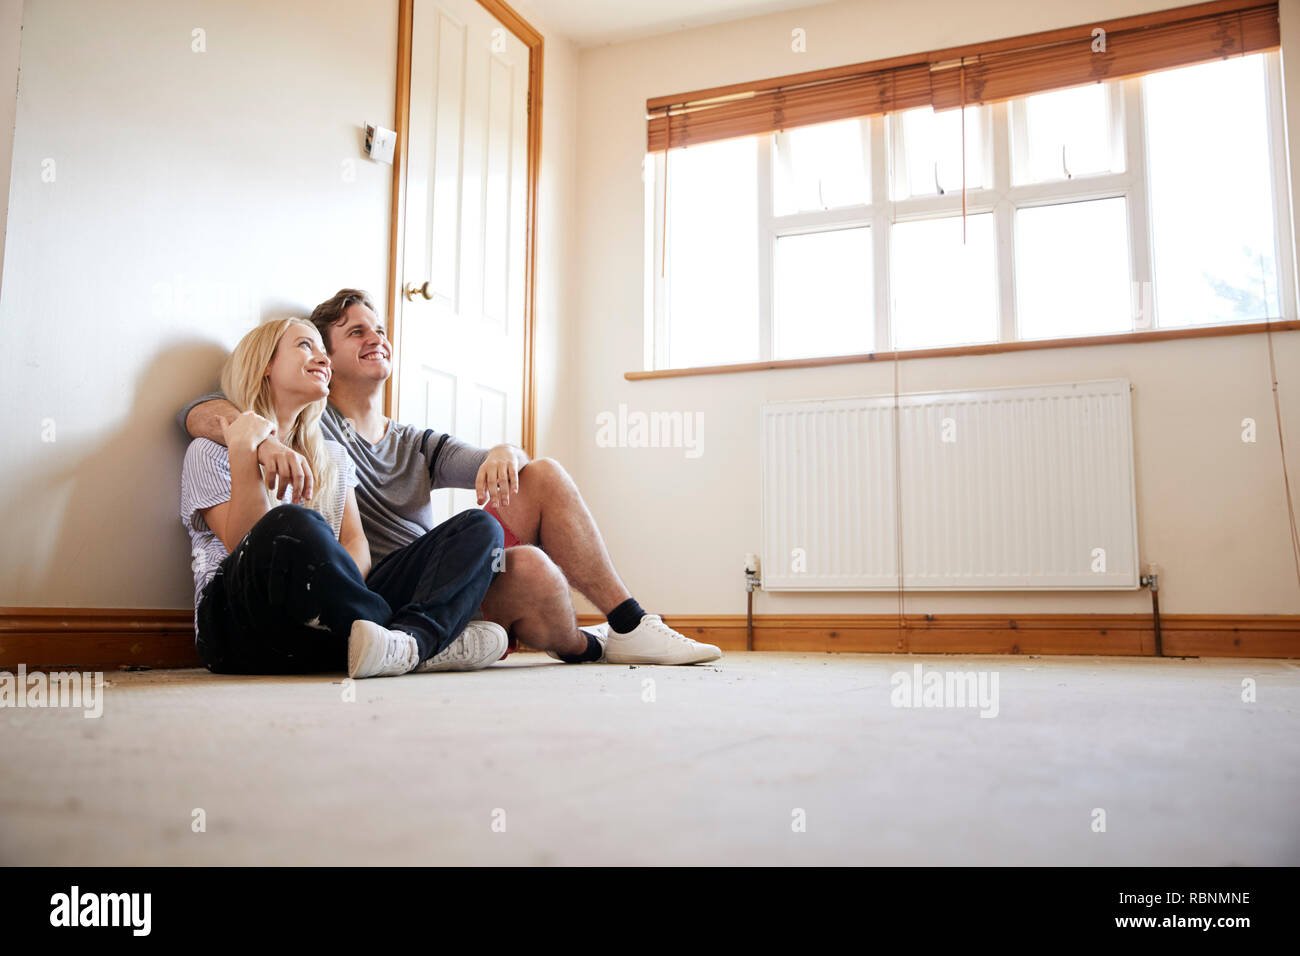 Couple Sitting on Floor In Empty Room de nouvelle conception de la planification d'accueil Banque D'Images